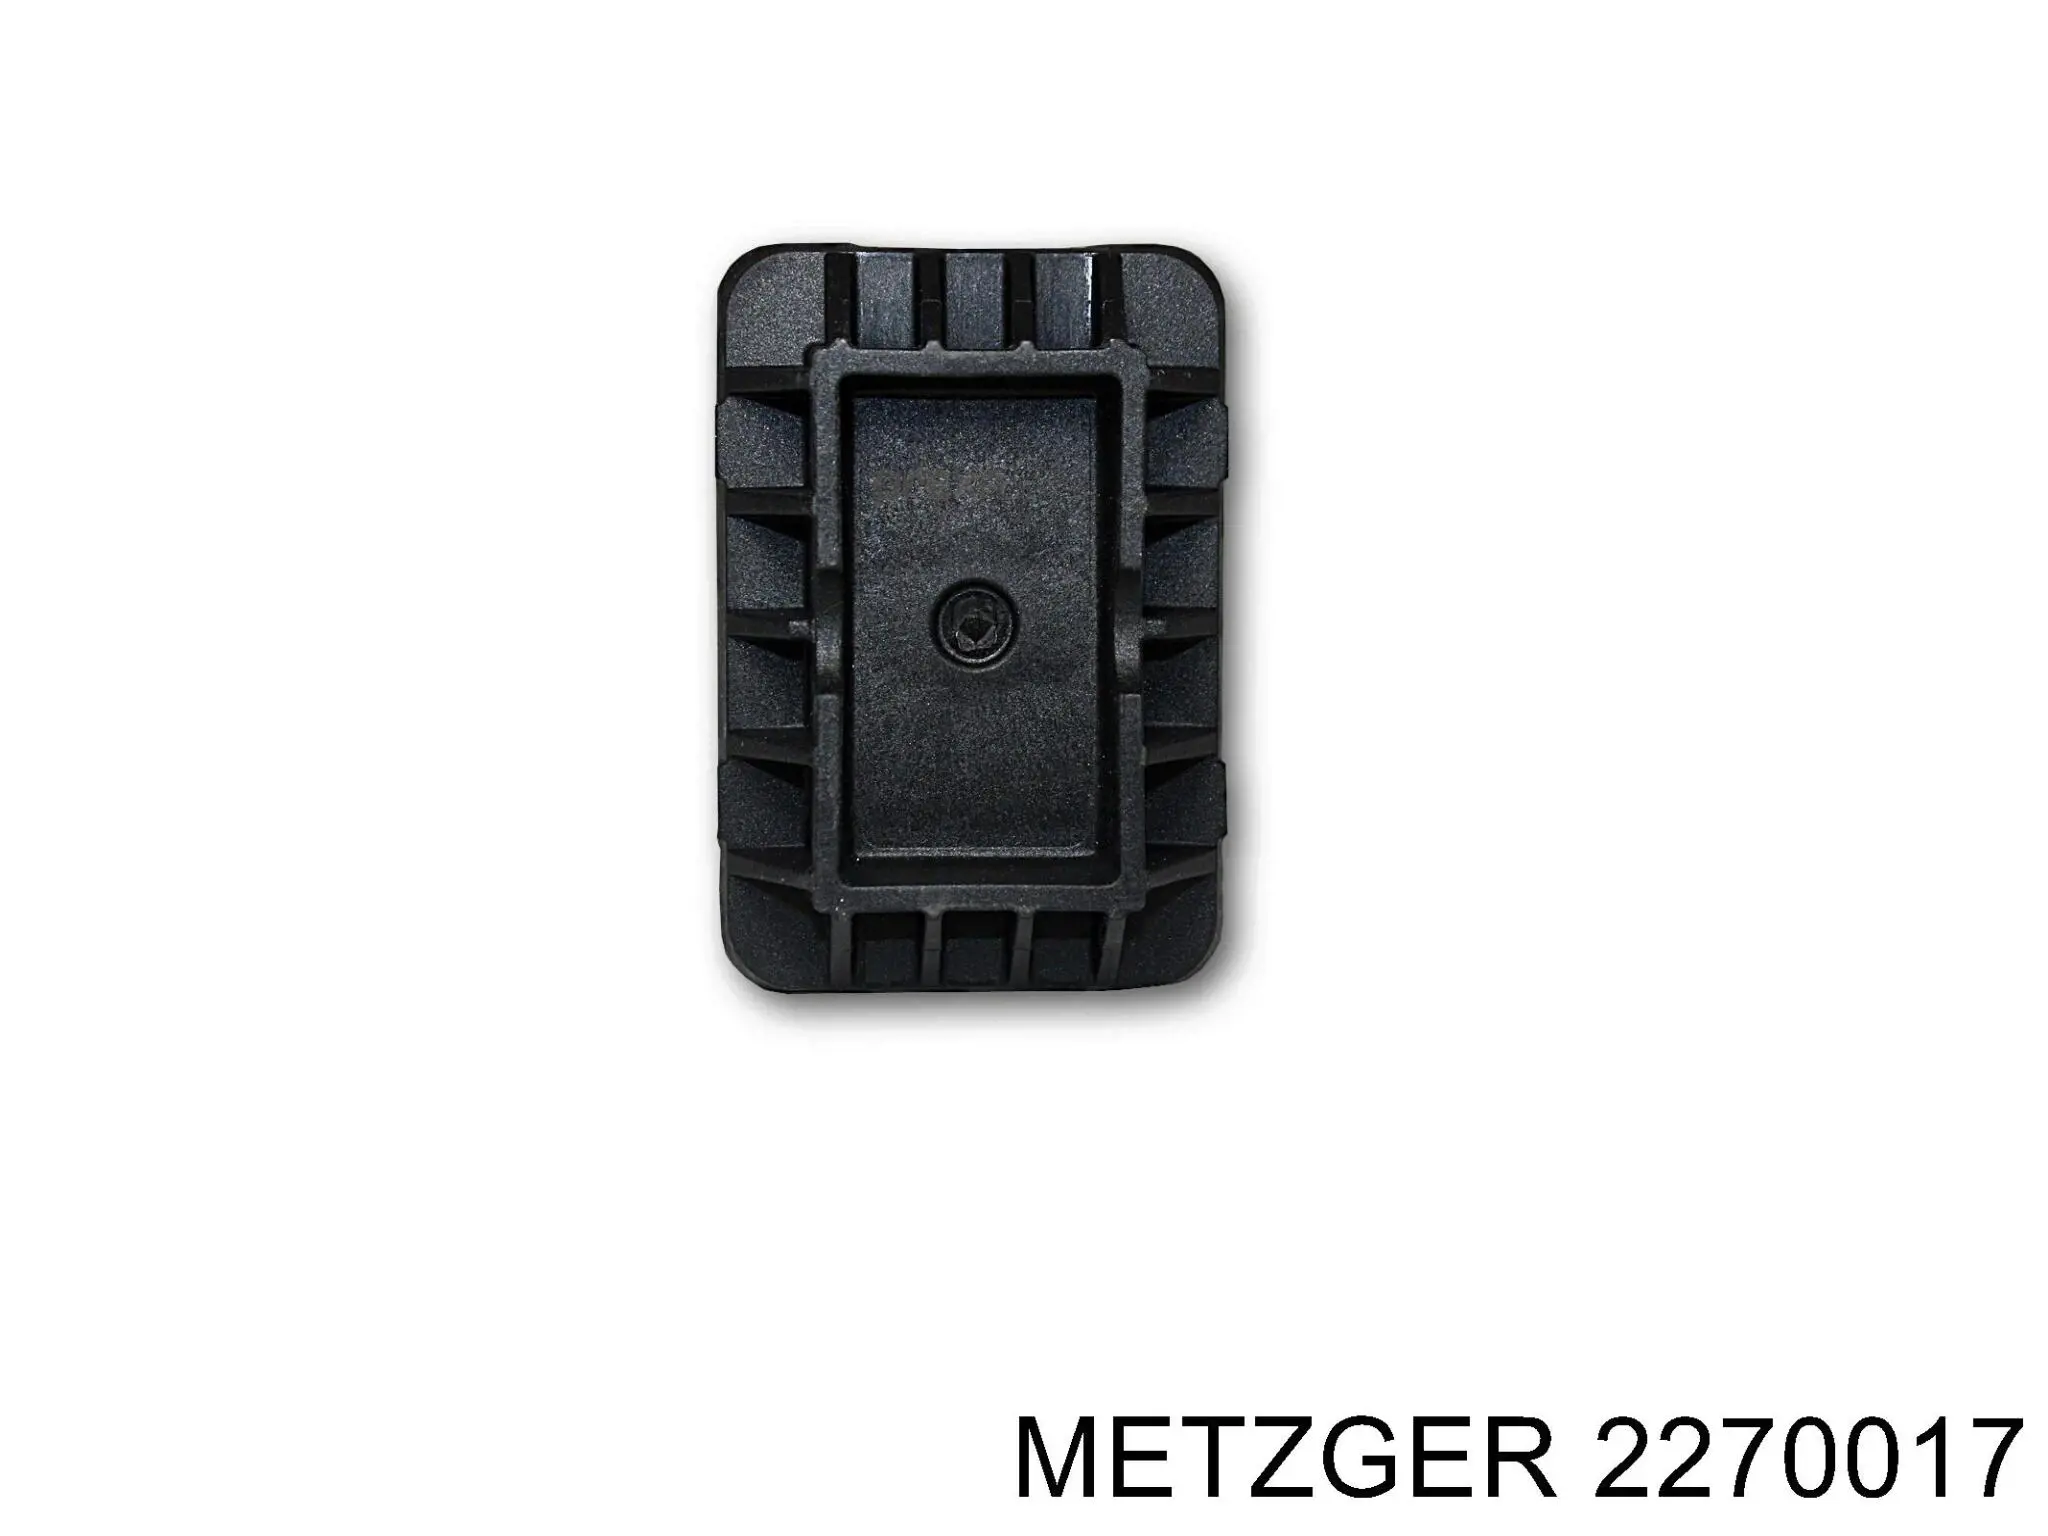 2270017 Metzger cojin de elevacion inferior (gato)